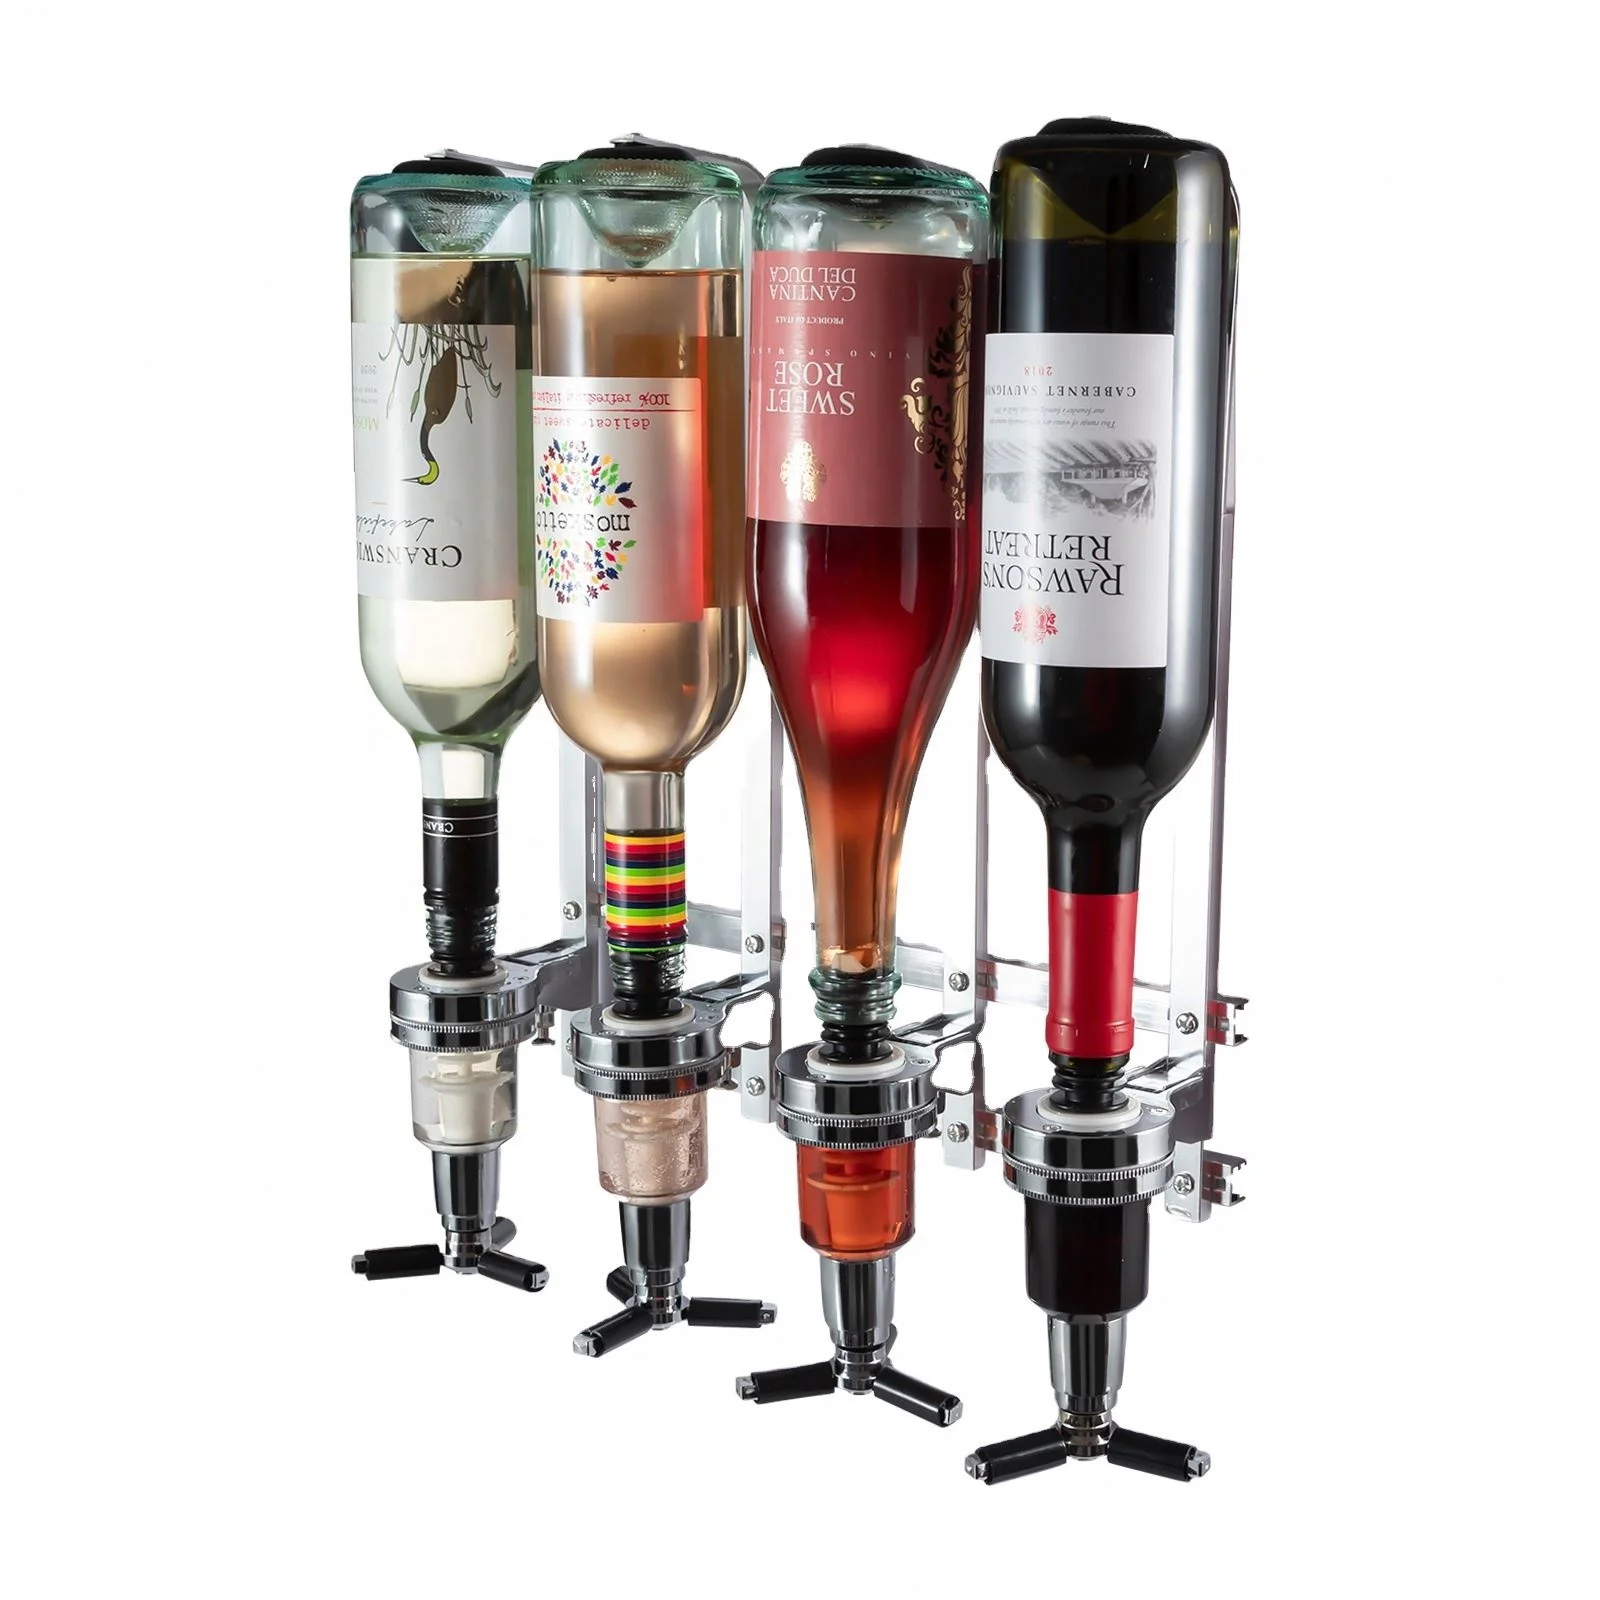 Spring-Loaded Wine Dispenser Stand Drinking Pourer Bottle Holder 4 Bottle Liquor Dispenser Wall Mounted Spirit Drinks Stand Optic 